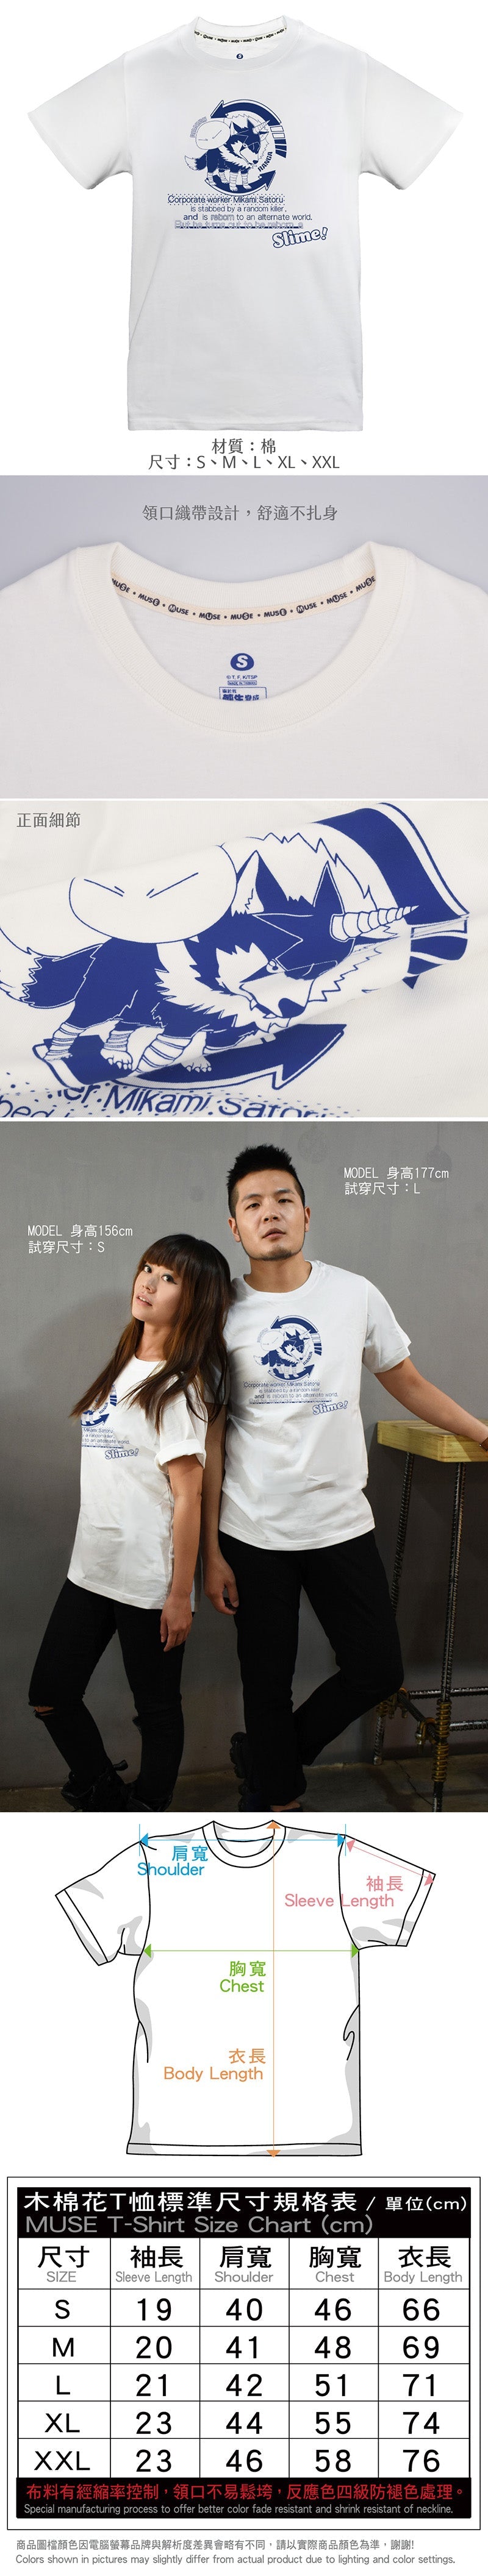 轉生史萊姆 潮流T-shirt 史+蘭 服裝 Microworks Online Store